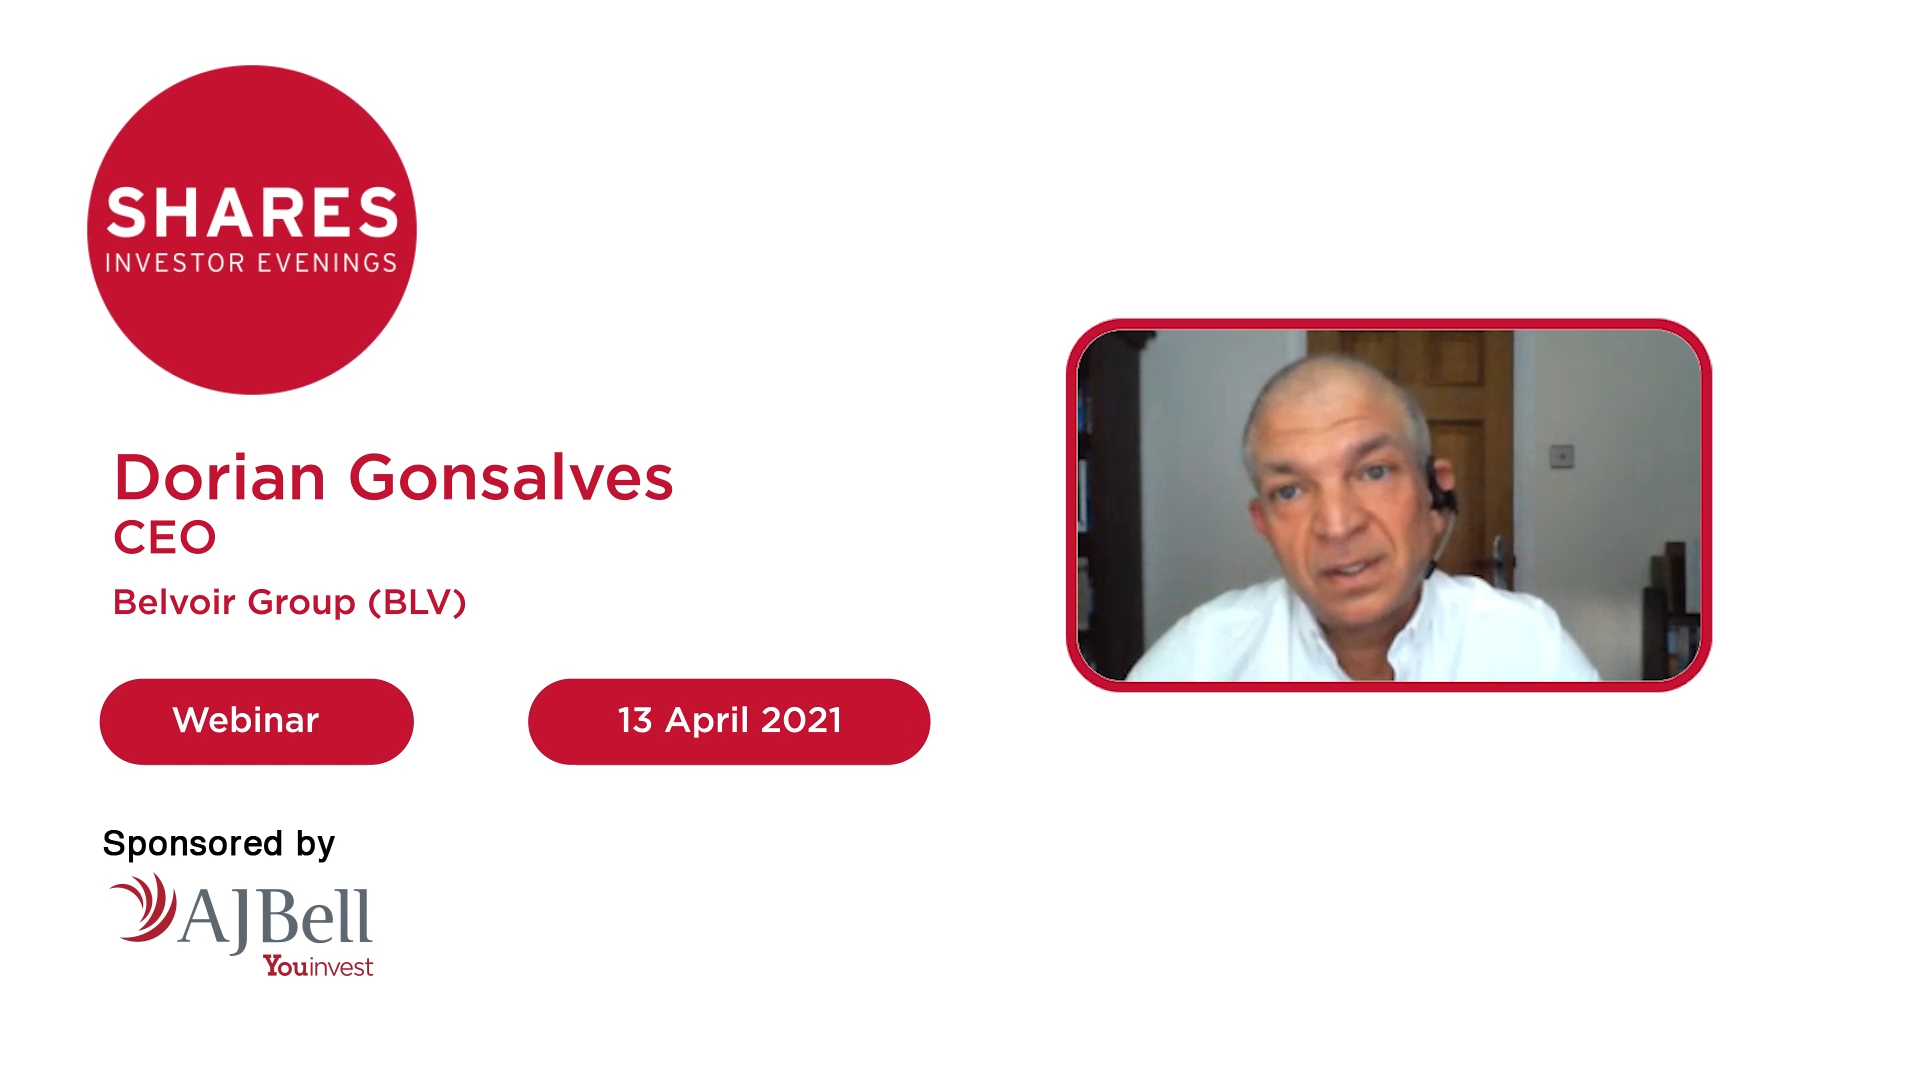 Belvoir Group (BLV) - Dorian Gonsalves, CEO